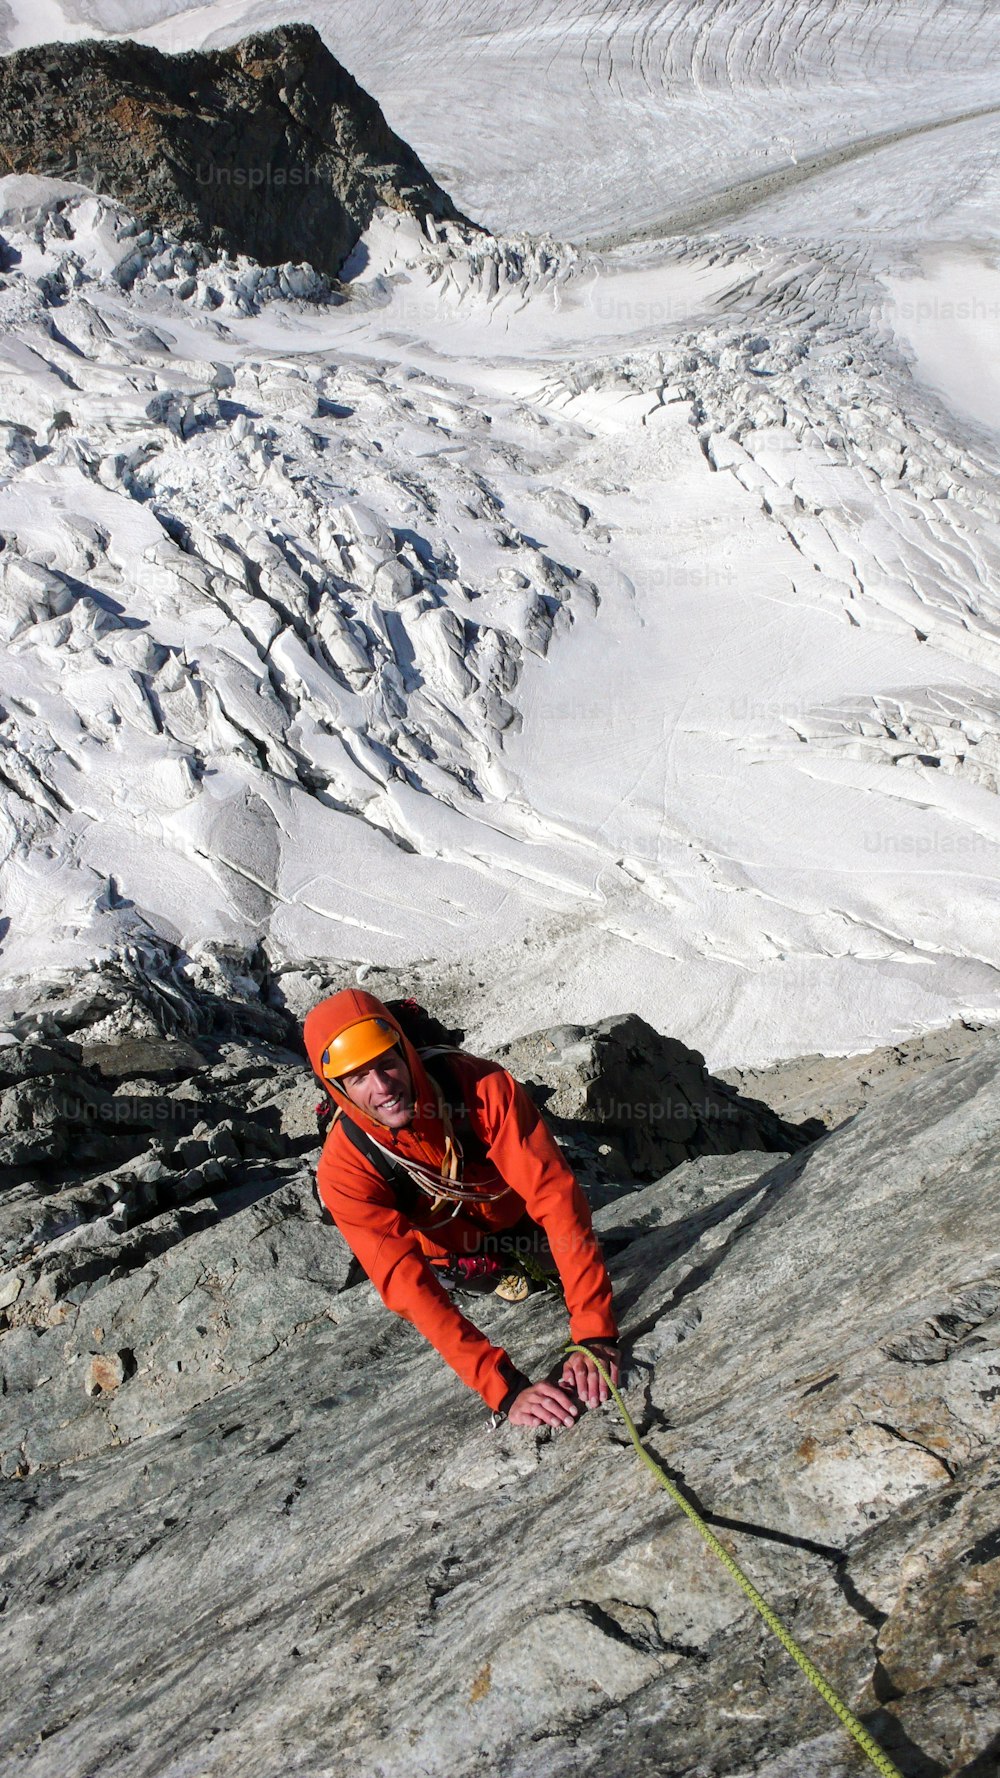 alpiniste sur une voie d’escalade exposée au-dessus d’un glacier dans les Alpes suisses près de Saint-Moritz